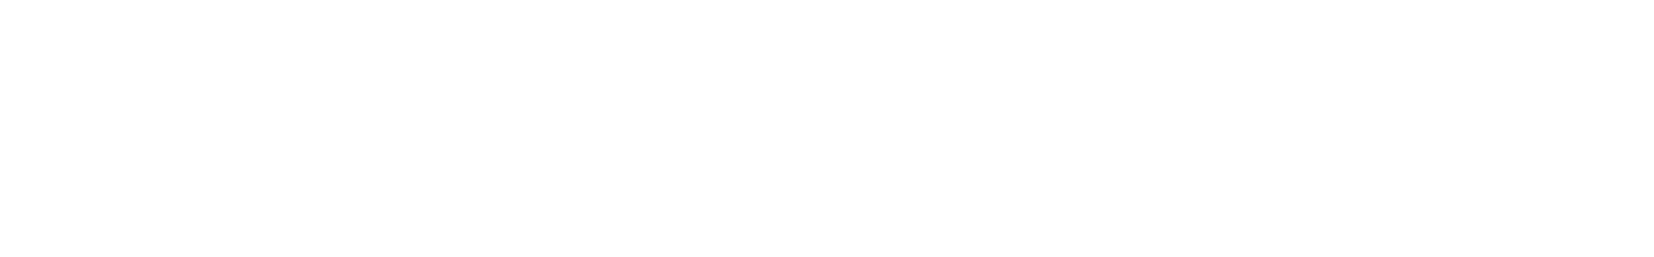 Let's go camping! 軽キャンピングカーレンタル・キャンプ用品レンタル